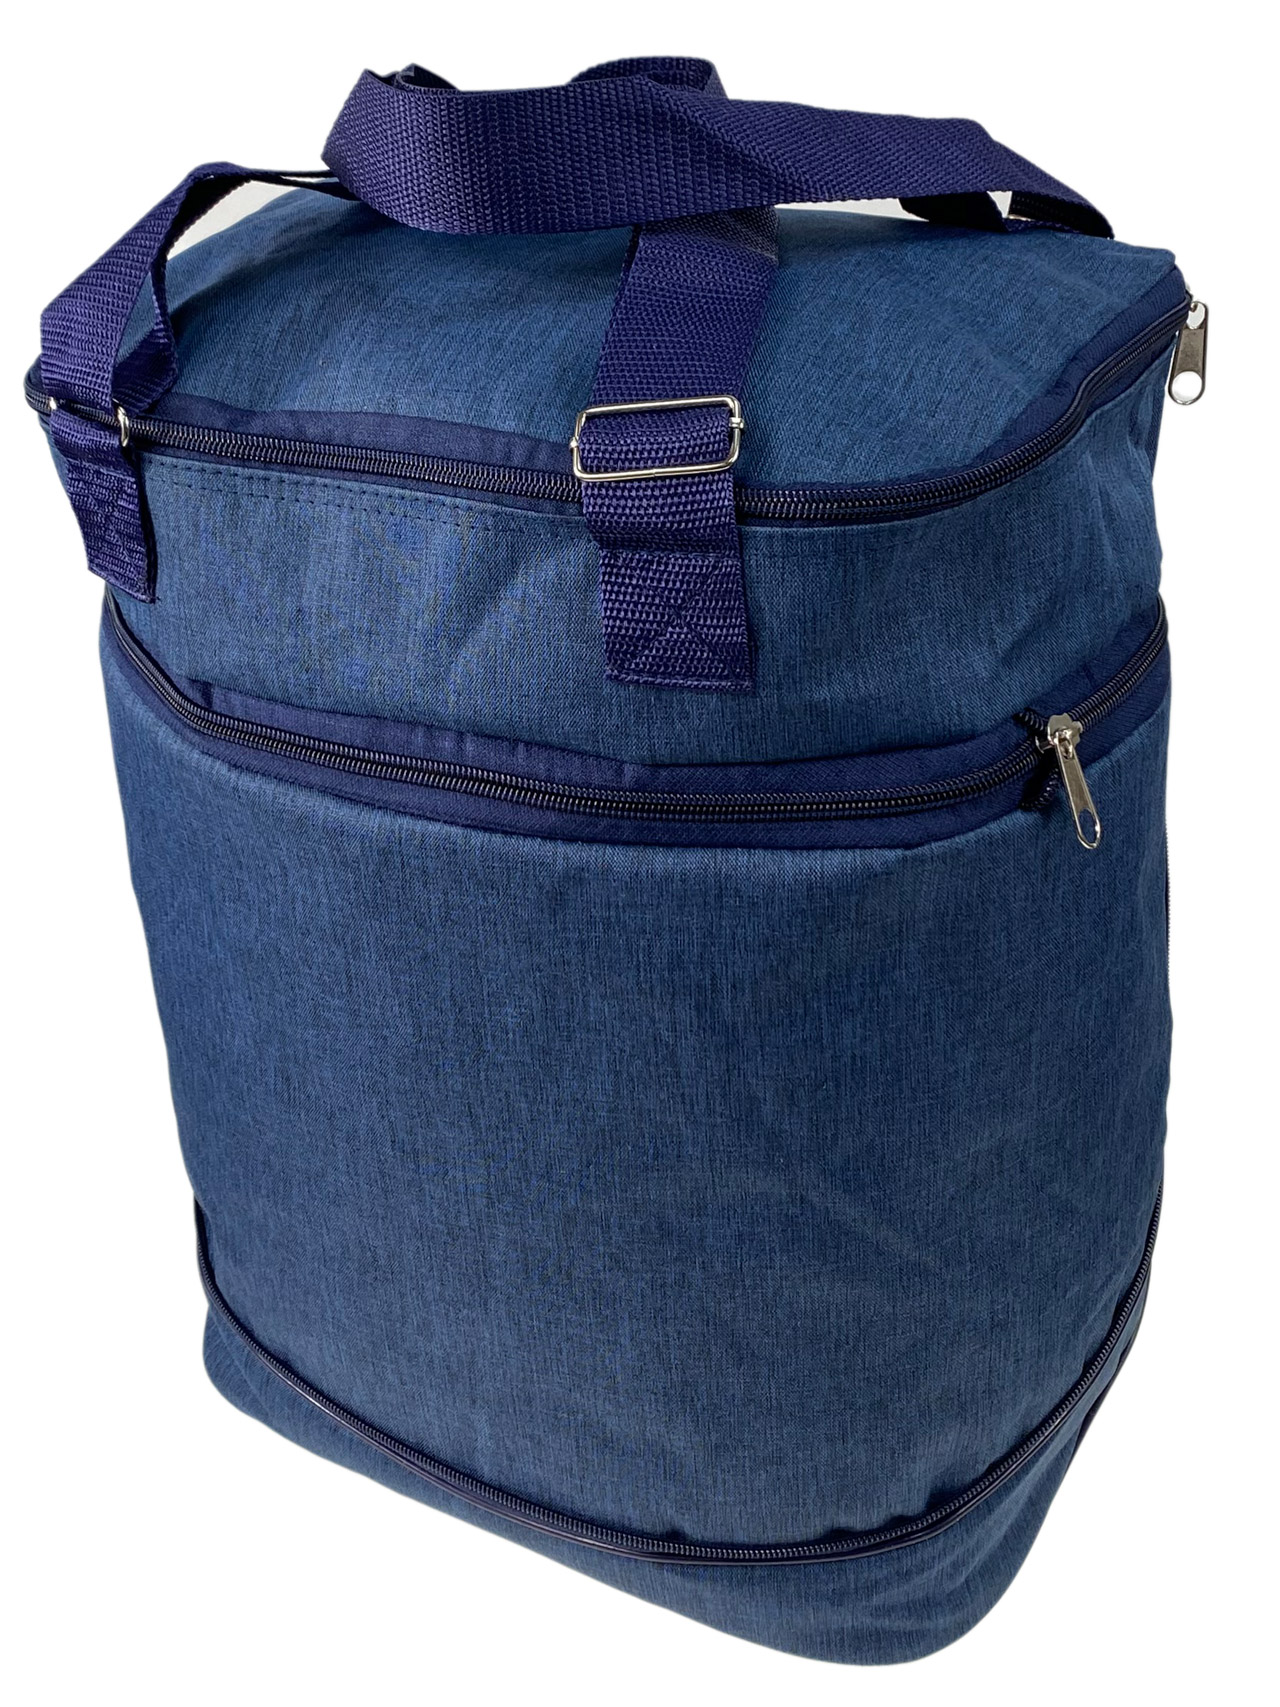 Дорожная сумка - трансформер на колесах из текстиля, цвет синий